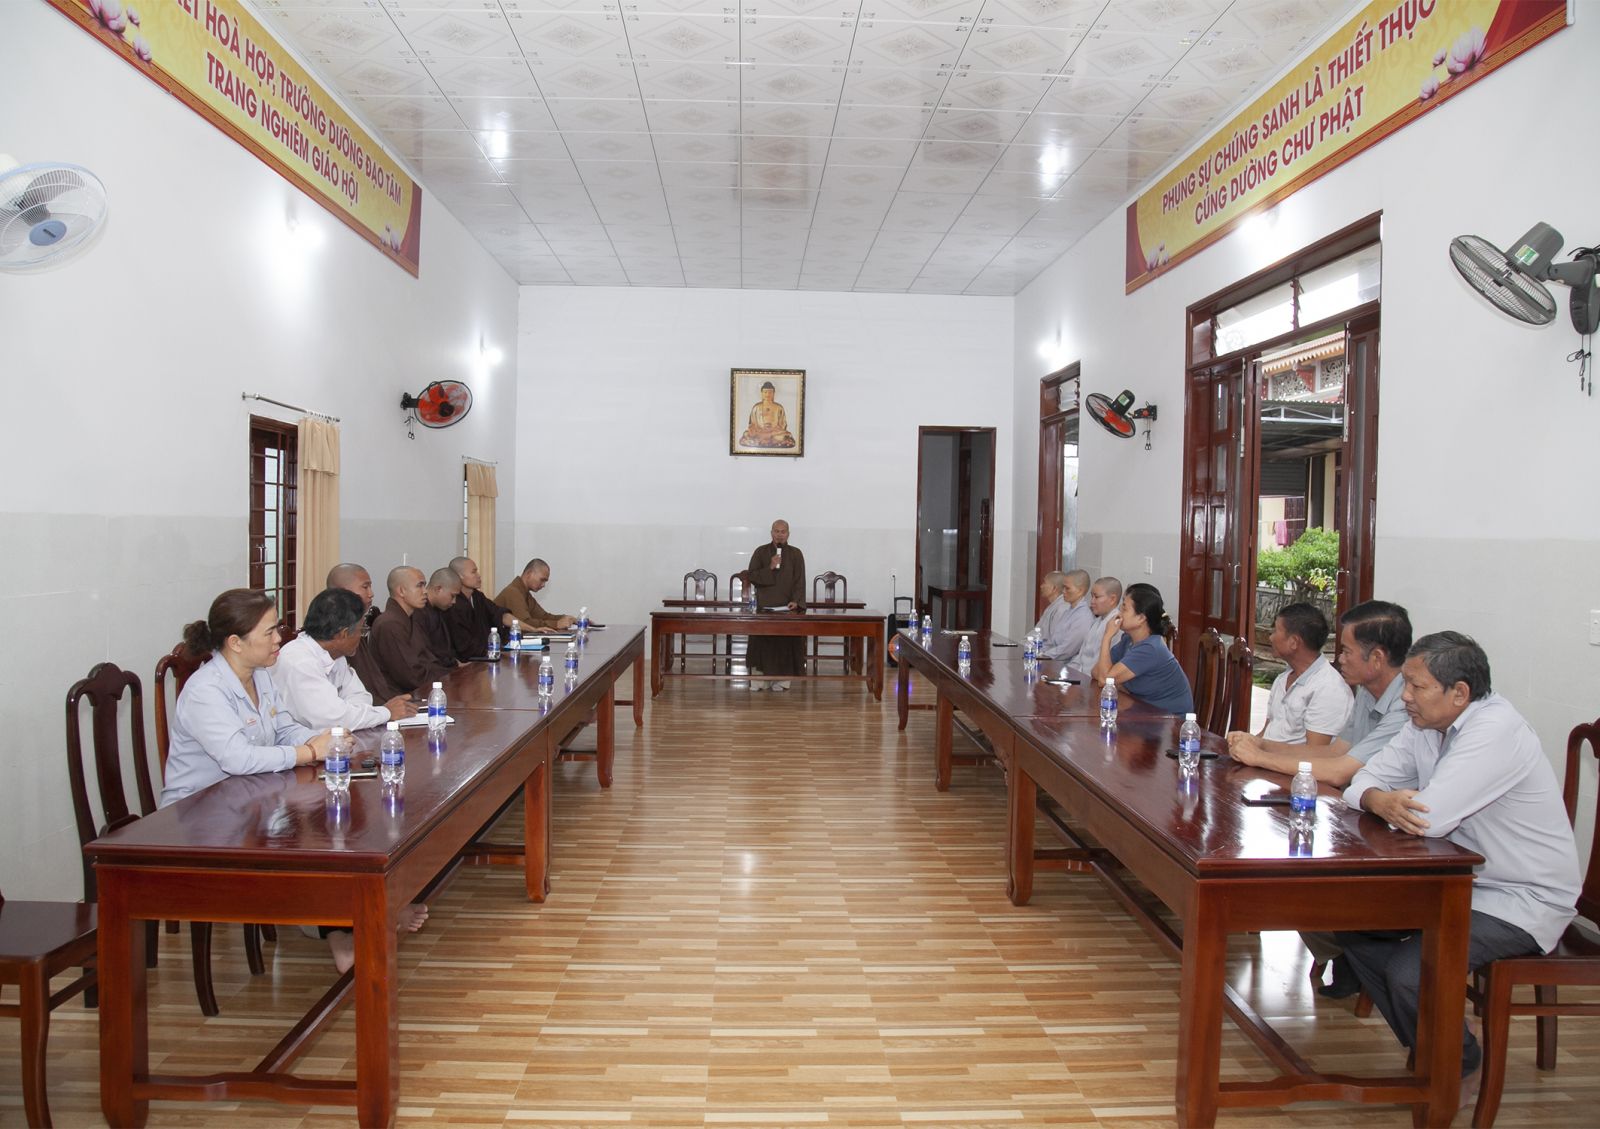 Krông Nô, ban trị sự Phật giáo huyện họp triển khai chuẩn bị cho Đại lễ cầu siêu các anh hùng liệt sỹ.

